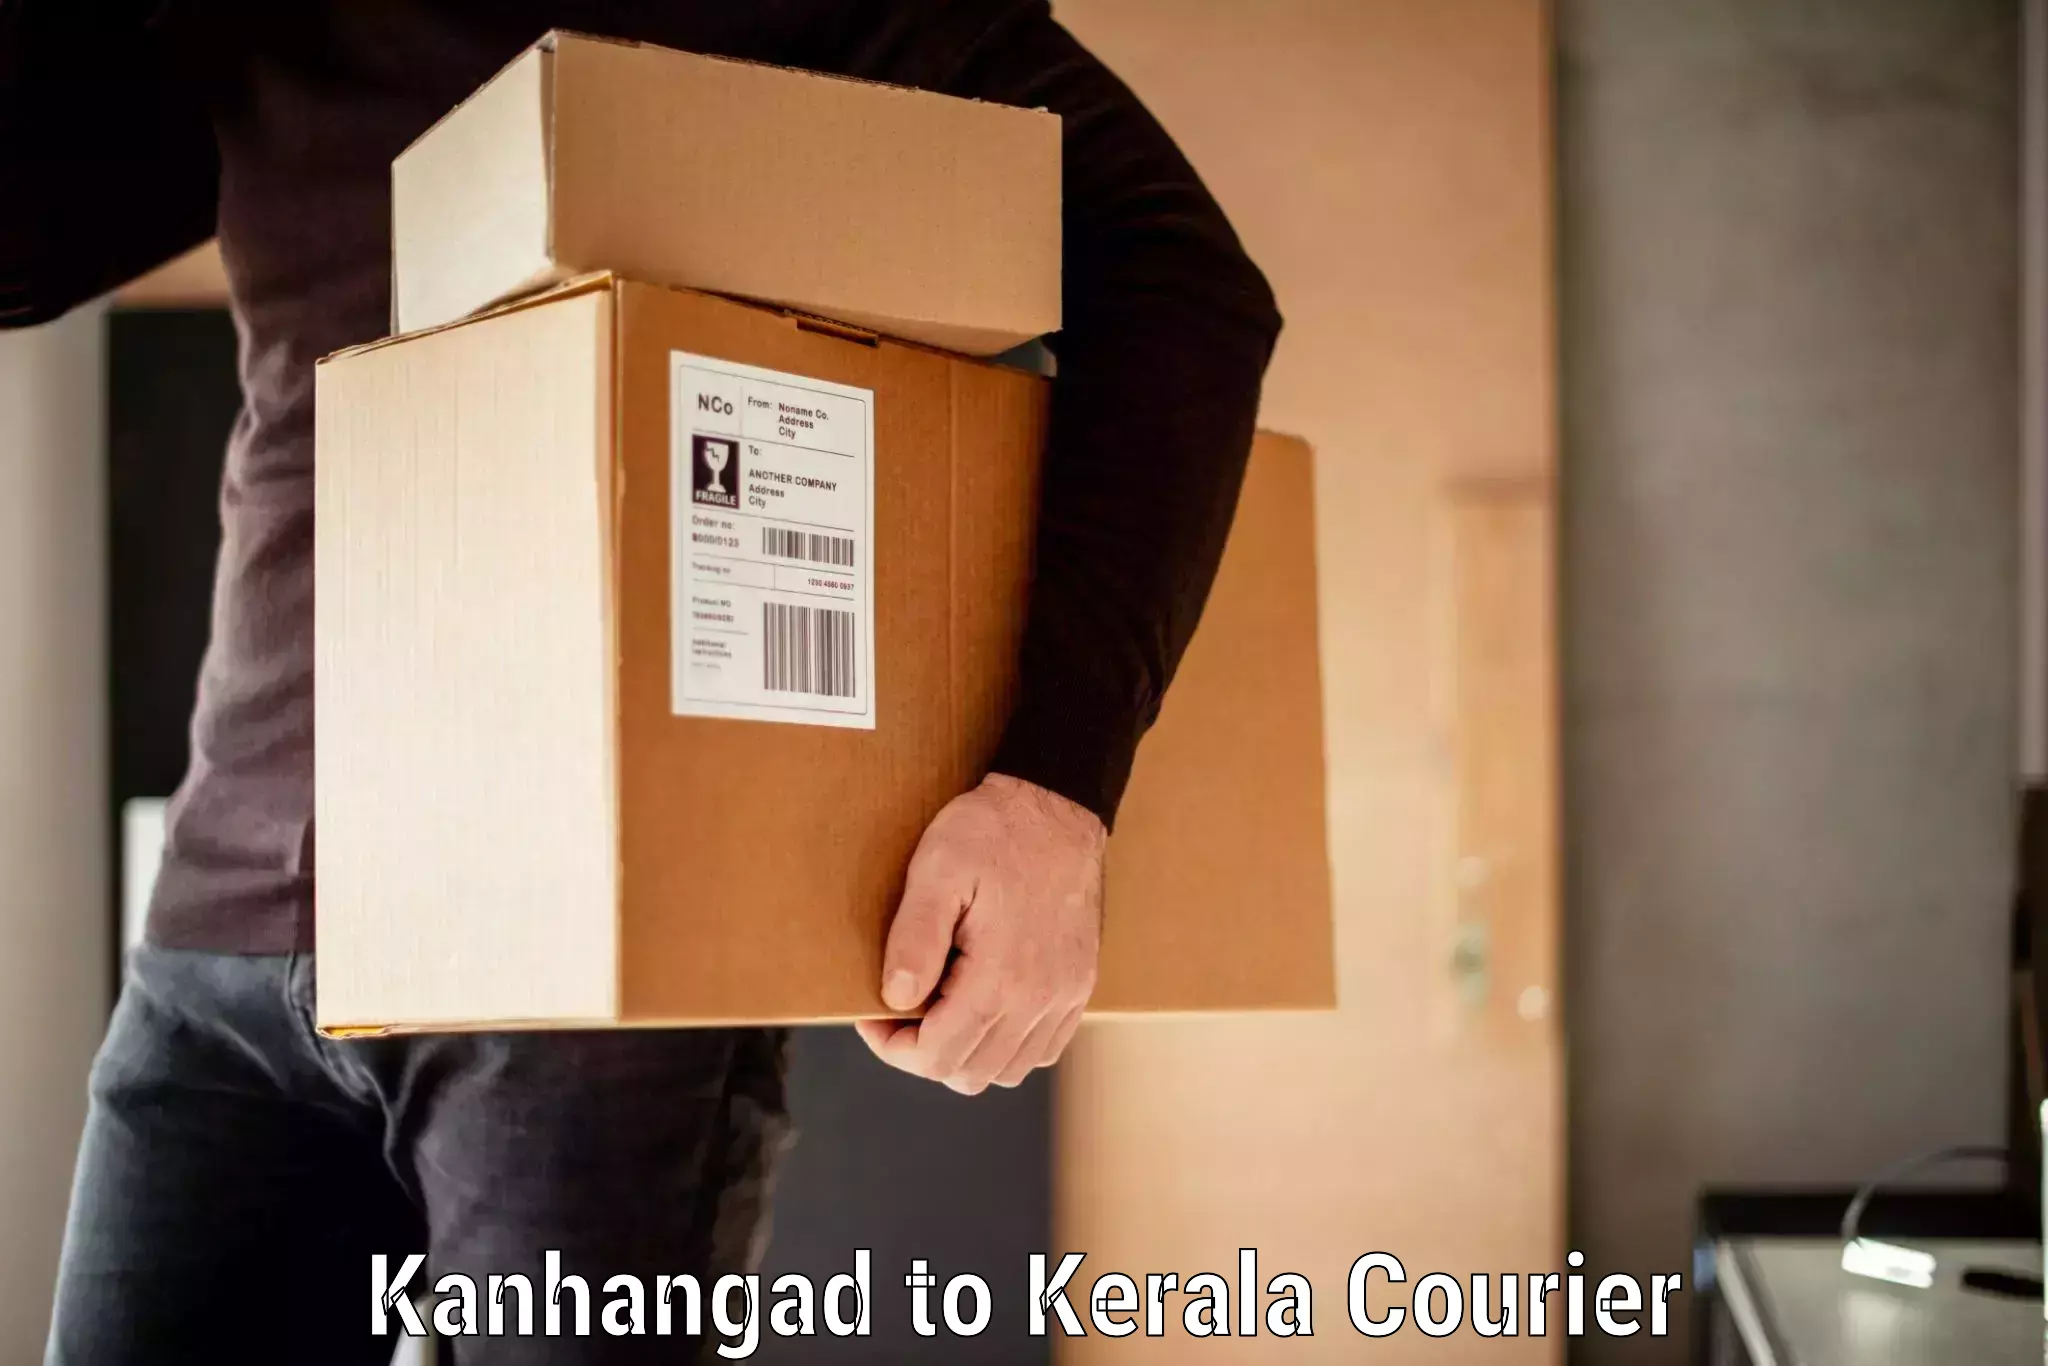 Baggage transport logistics Kanhangad to Pandikkad